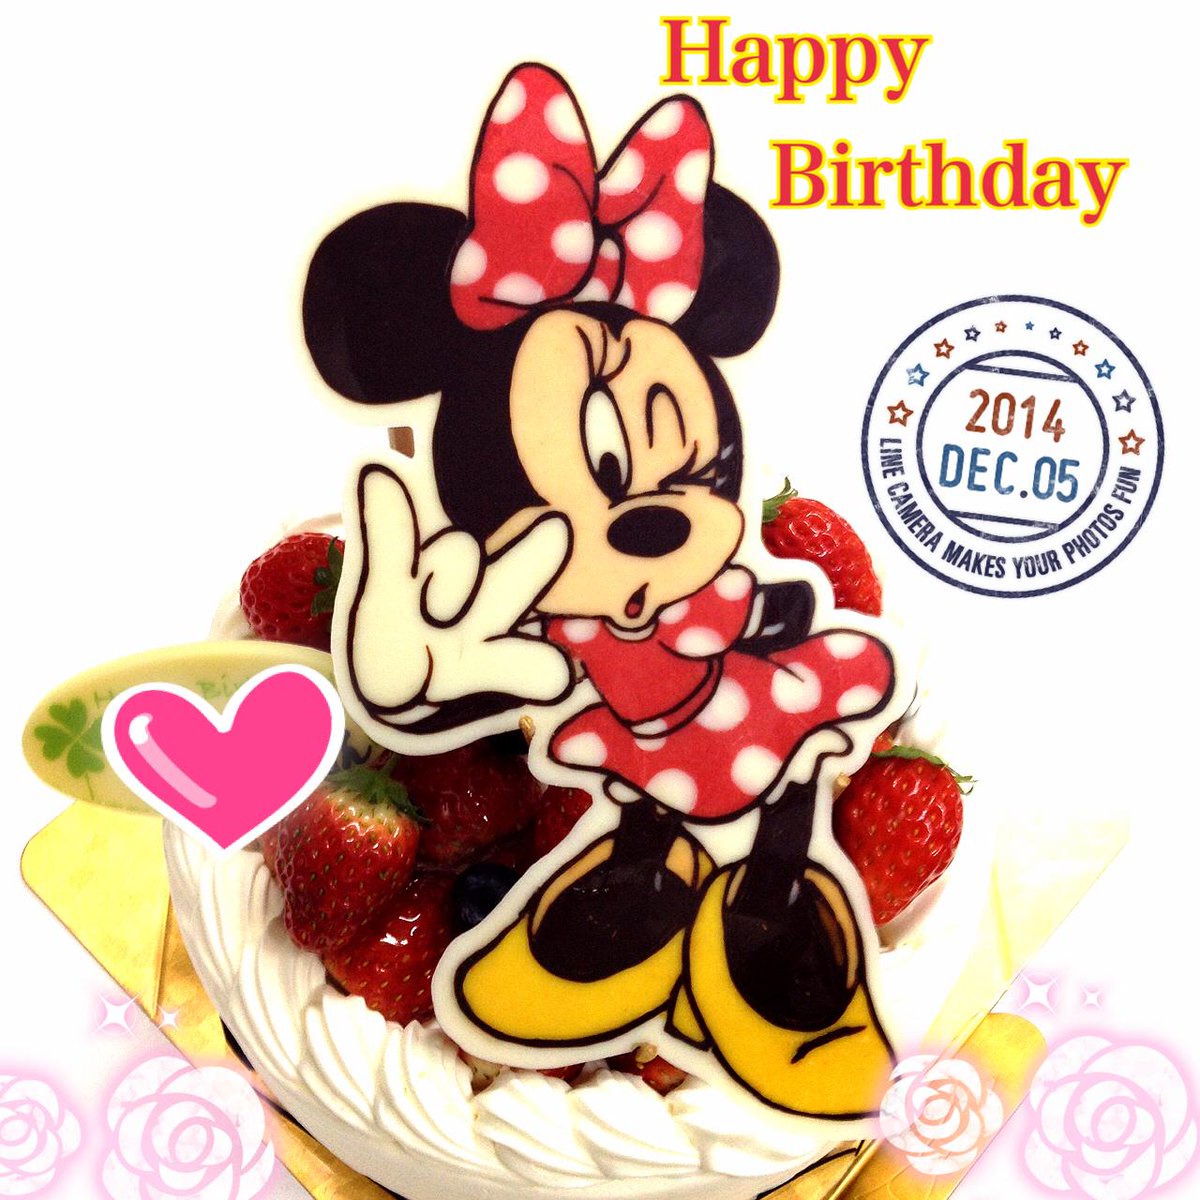 キャラデコ職人 ミニーちゃんのイラストケーキです 1歳のお誕生日おめでとうございます Http T Co Acosyrzika Http T Co Puh0eh5kpr Twitter